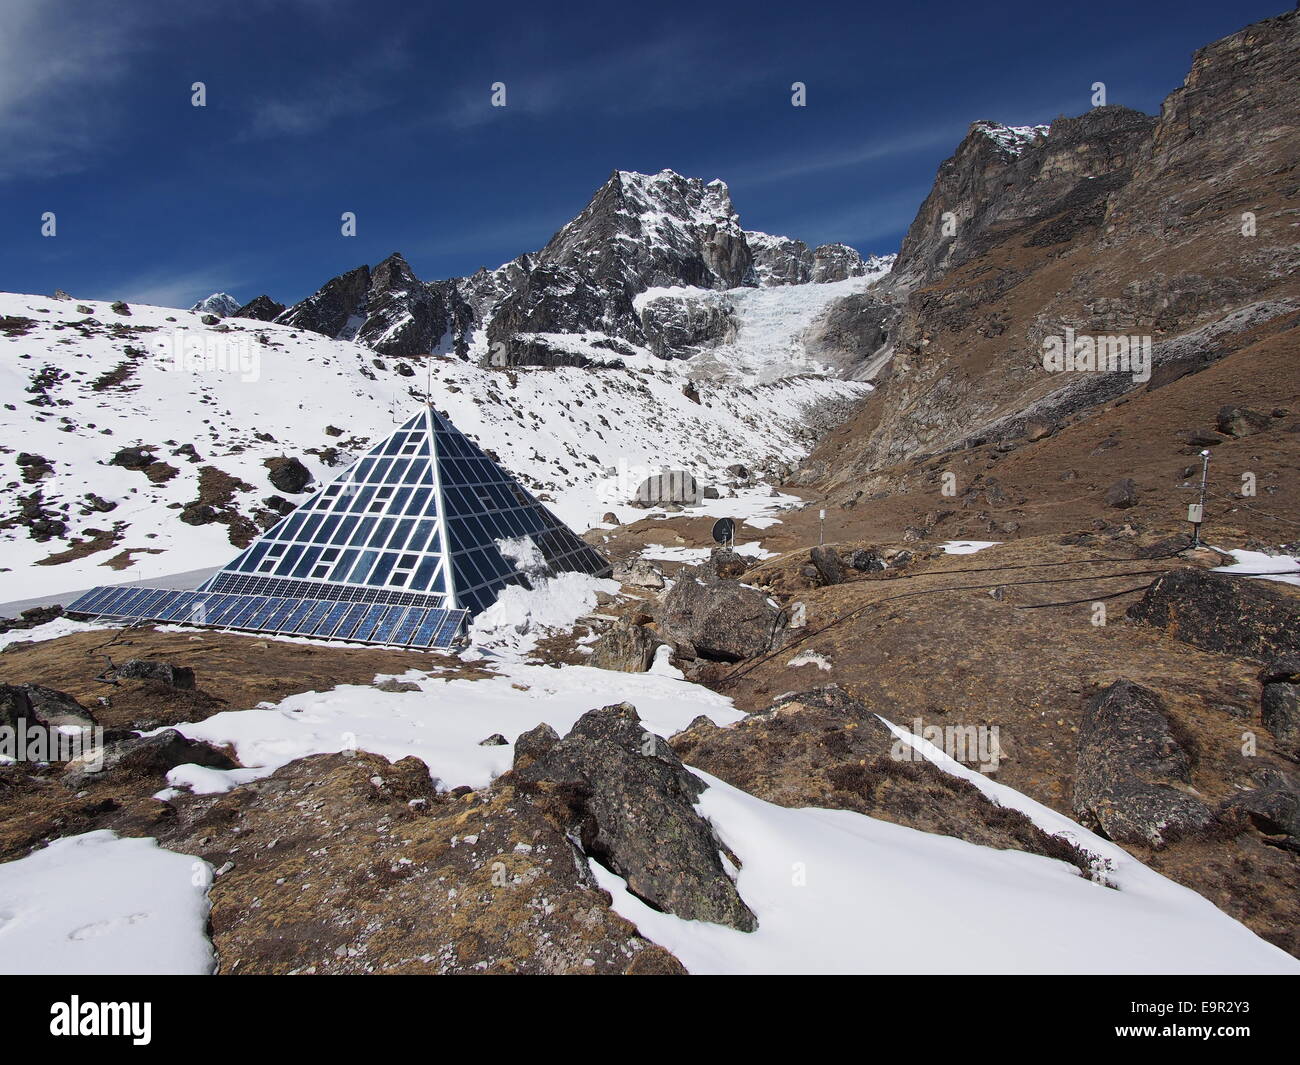 Ev-K2-CNR aka piramide italiana ad alta altitudine centro di ricerca scientifica si trova nei pressi del monte Everest nella regione del Khumbu del Nepal. Foto Stock